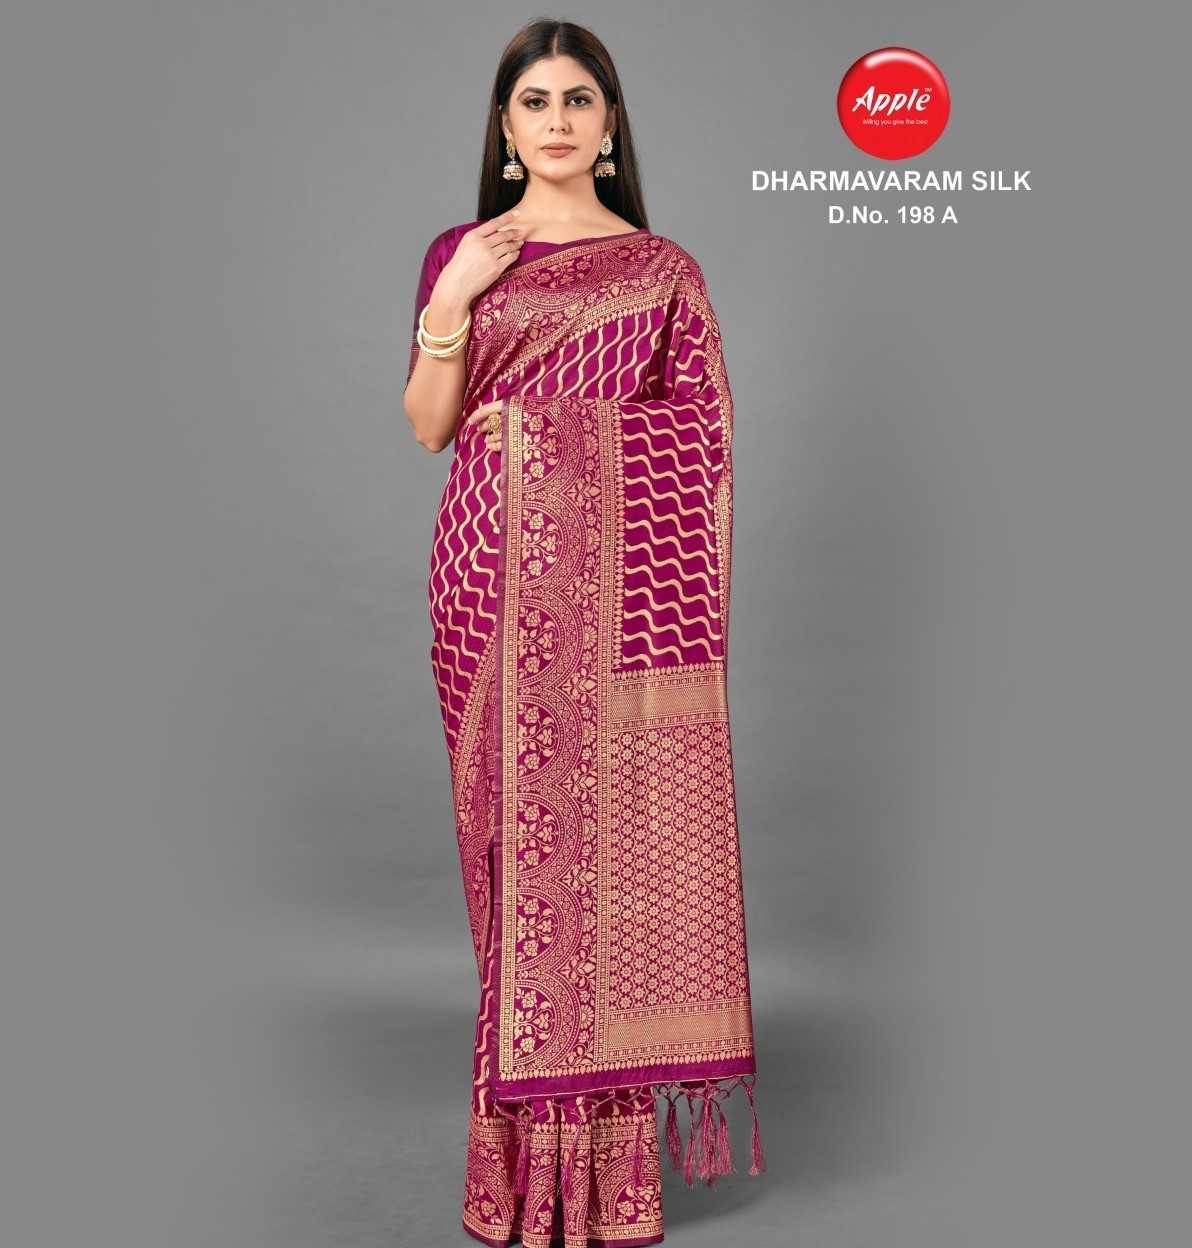 apple sarees dharmavaram silk banrasi silk set wise matching colour sarees collection